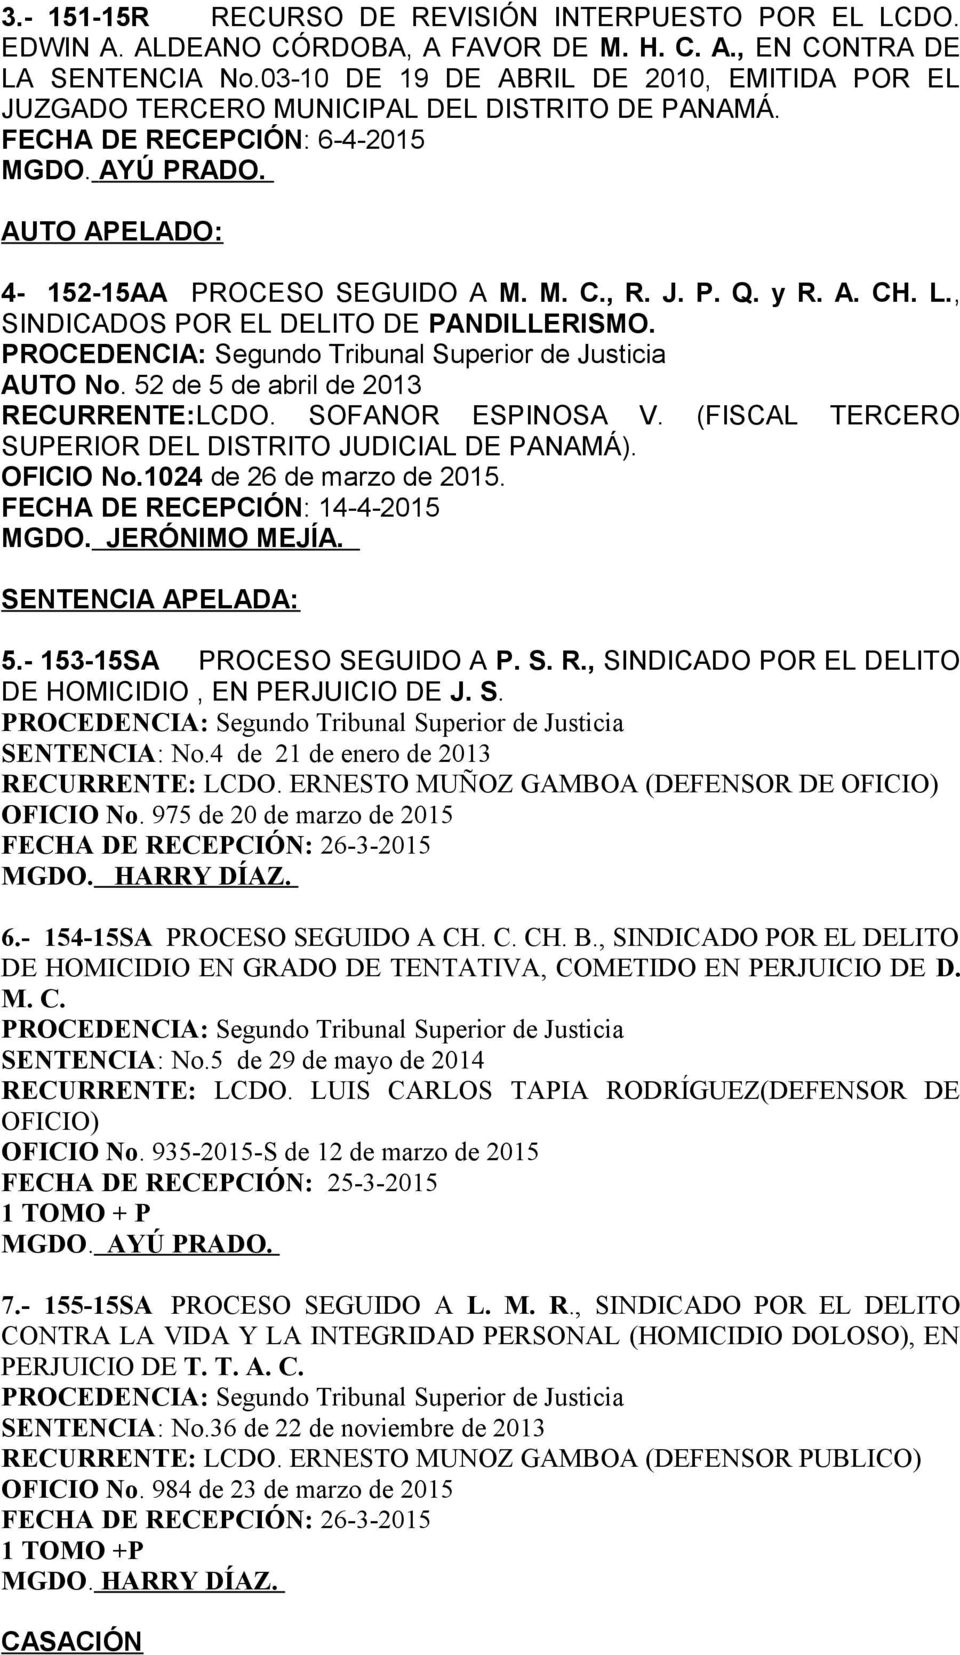 L., SINDICADOS POR EL DELITO DE PANDILLERISMO. AUTO No. 52 de 5 de abril de 2013 RECURRENTE:LCDO. SOFANOR ESPINOSA V. (FISCAL TERCERO SUPERIOR DEL DISTRITO JUDICIAL DE PANAMÁ). OFICIO No.